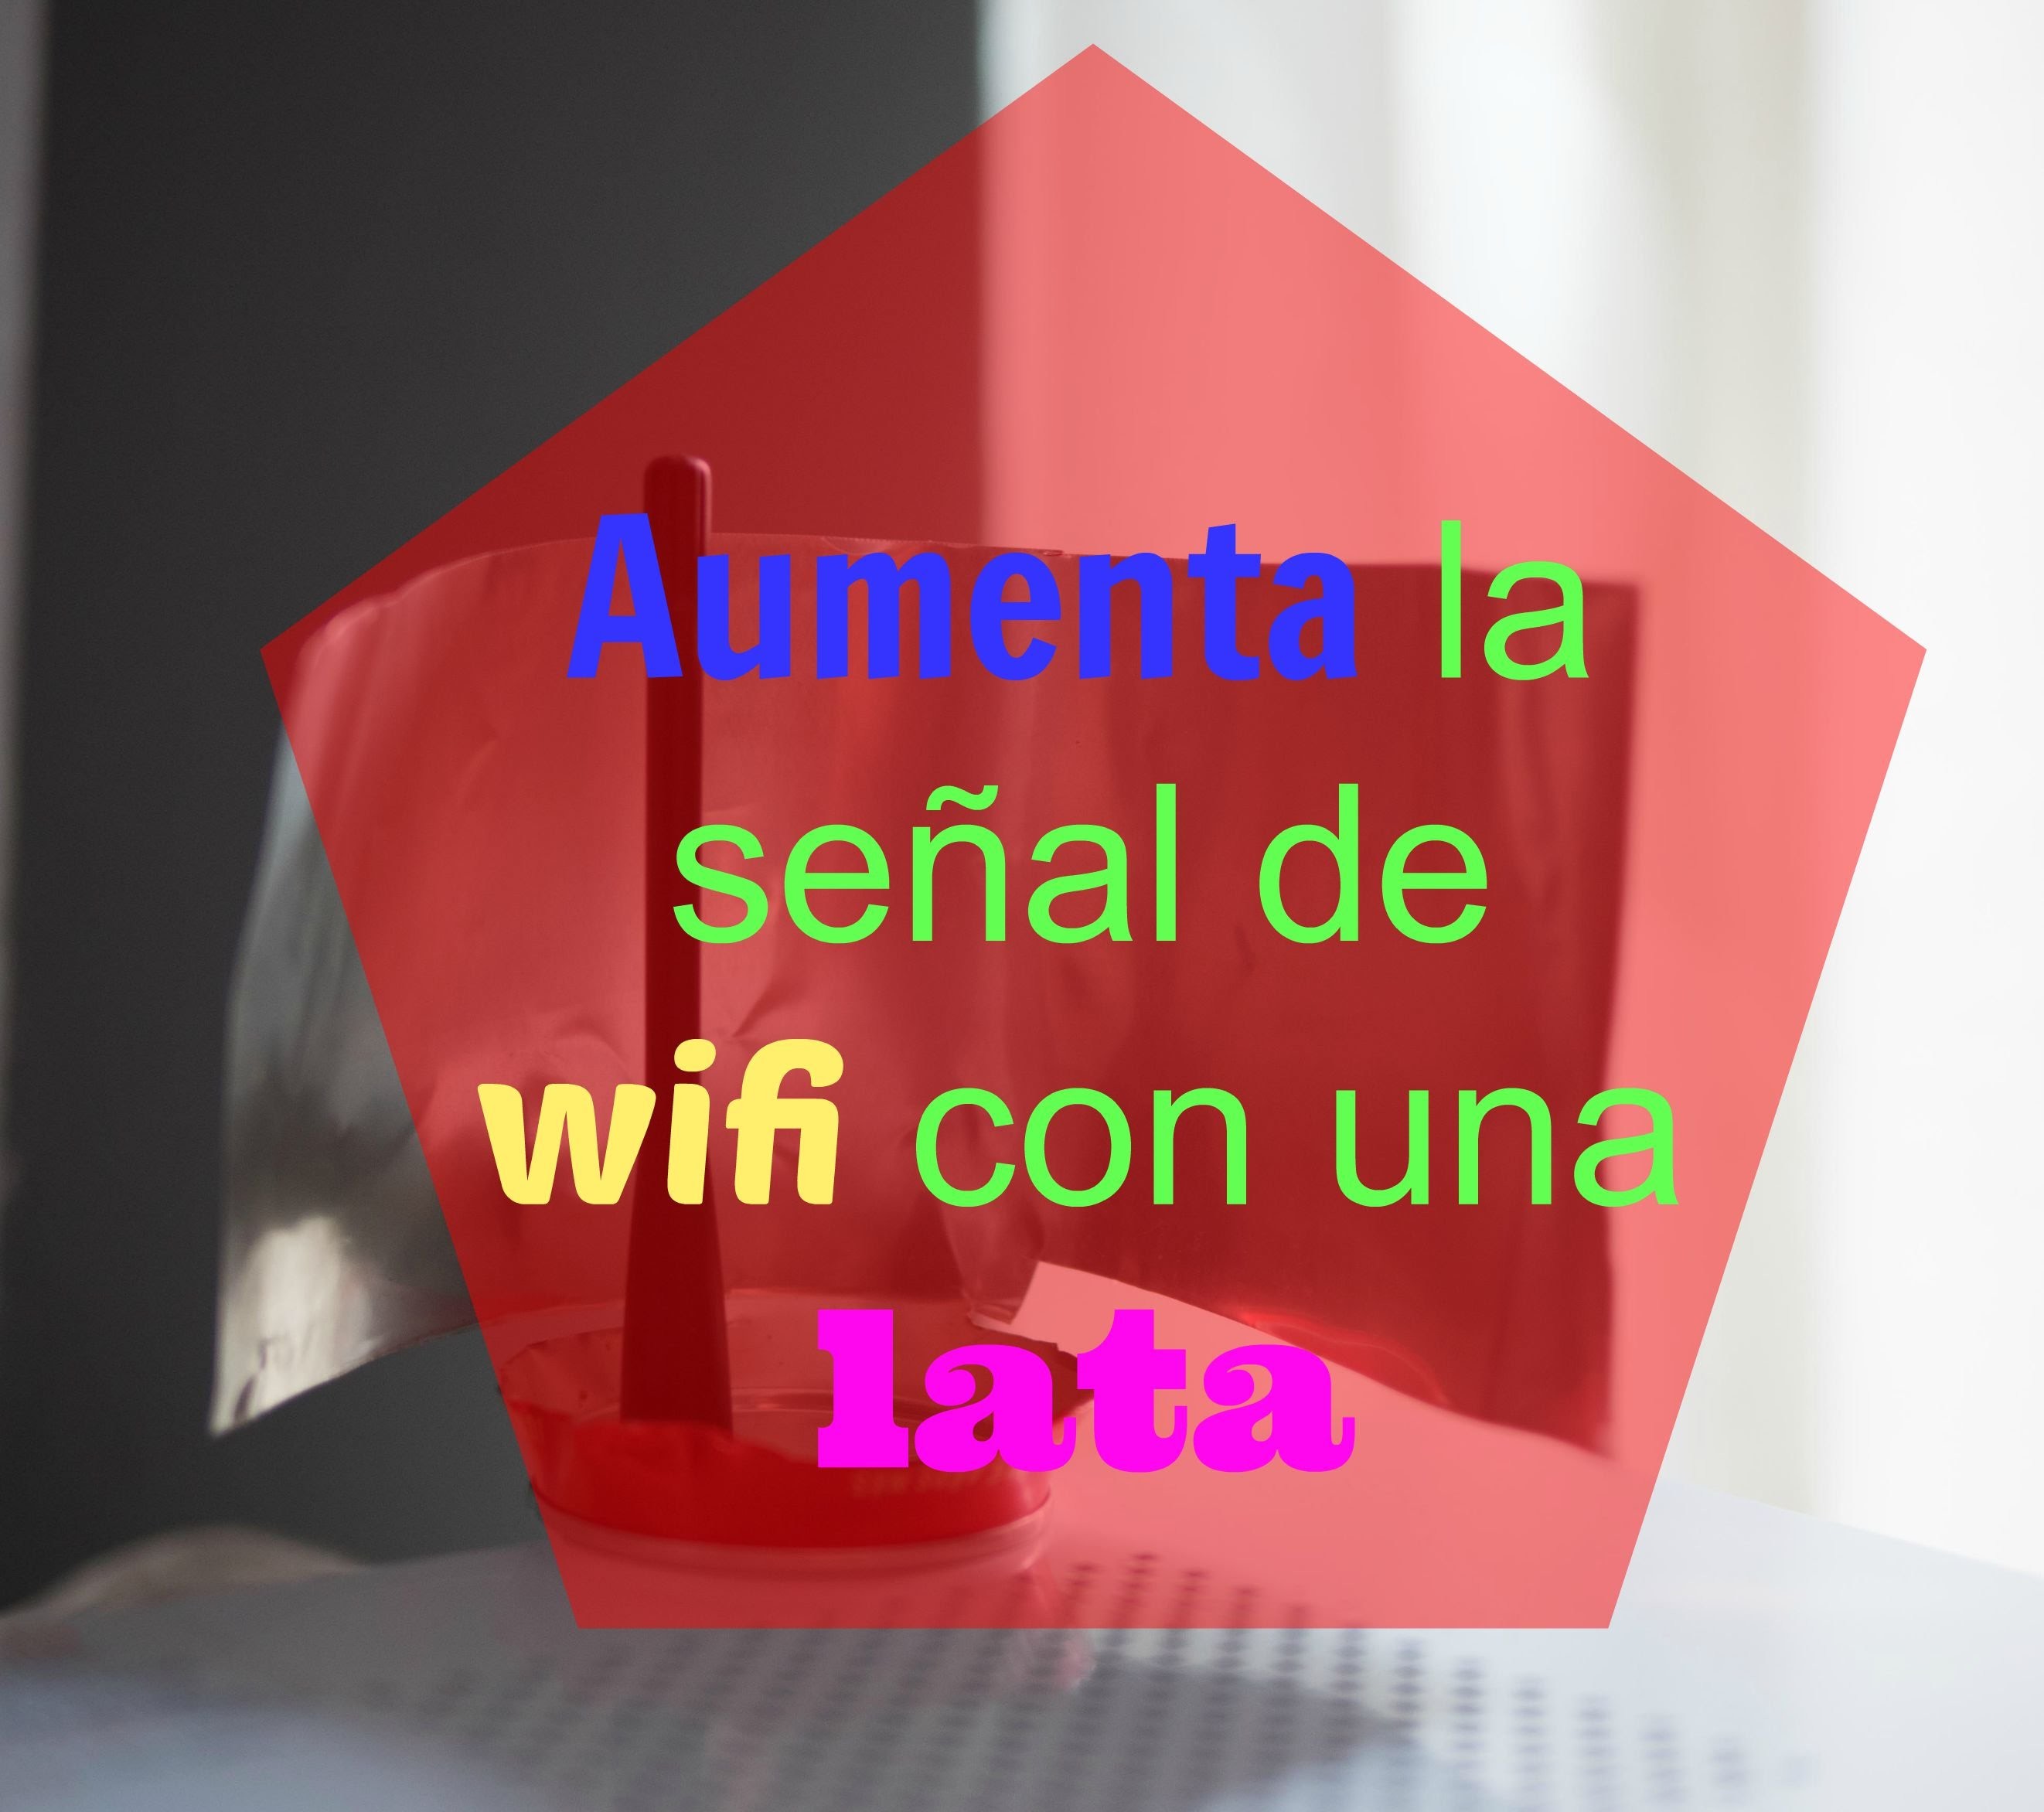 Cómo aumentar la señal wifi - Ahorradoras.com